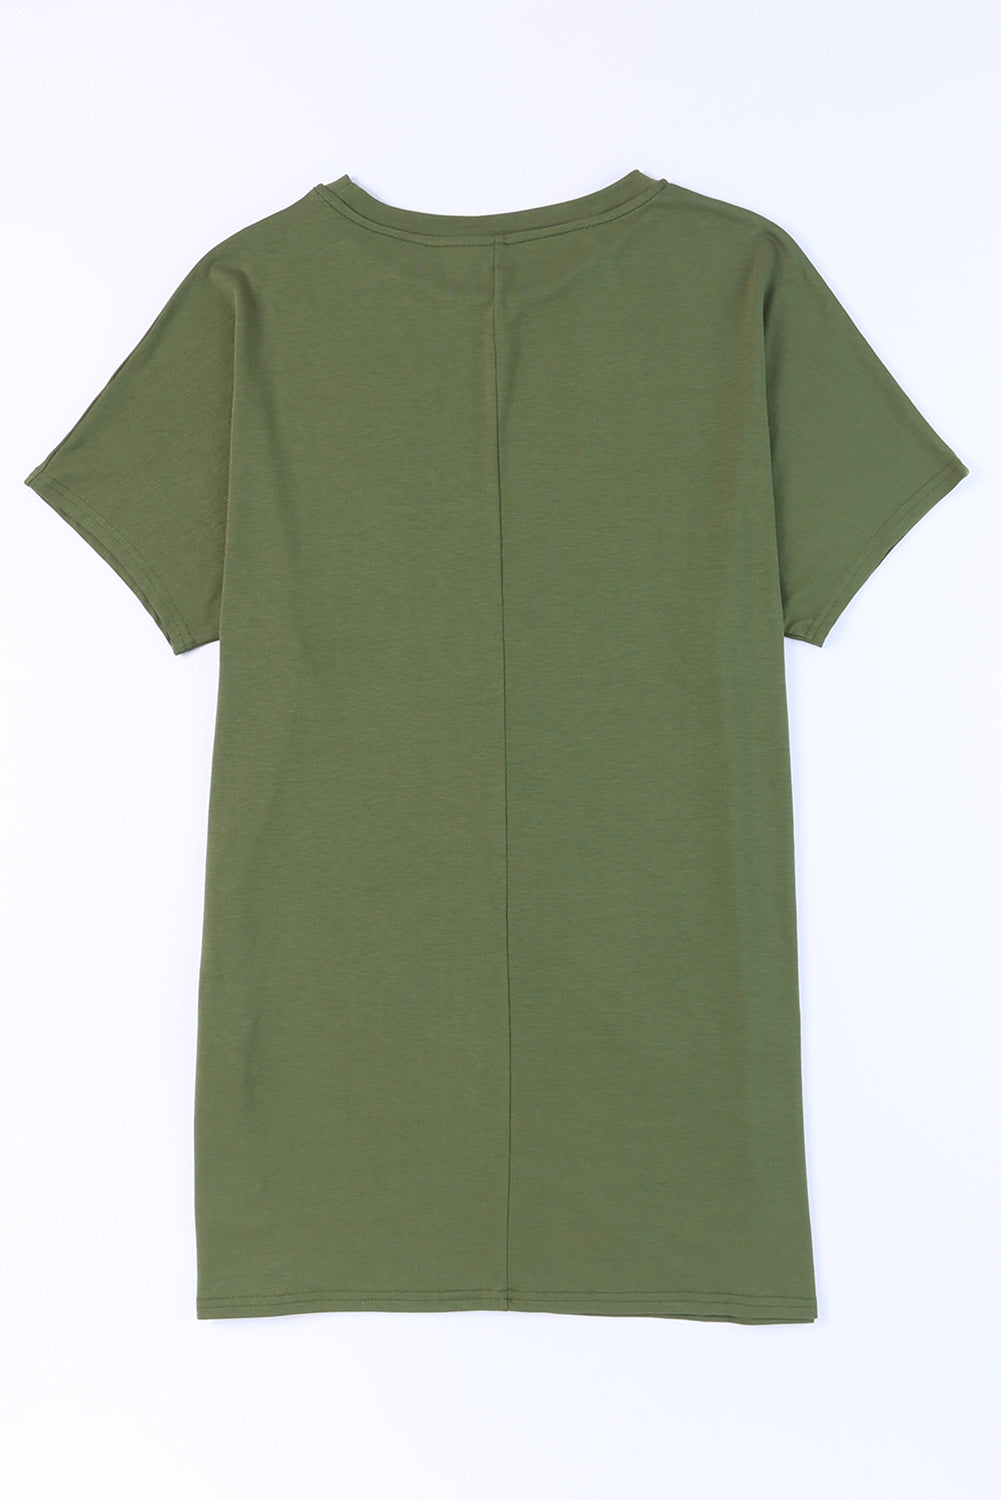 Haut tunique vert clair à manches courtes et poches latérales